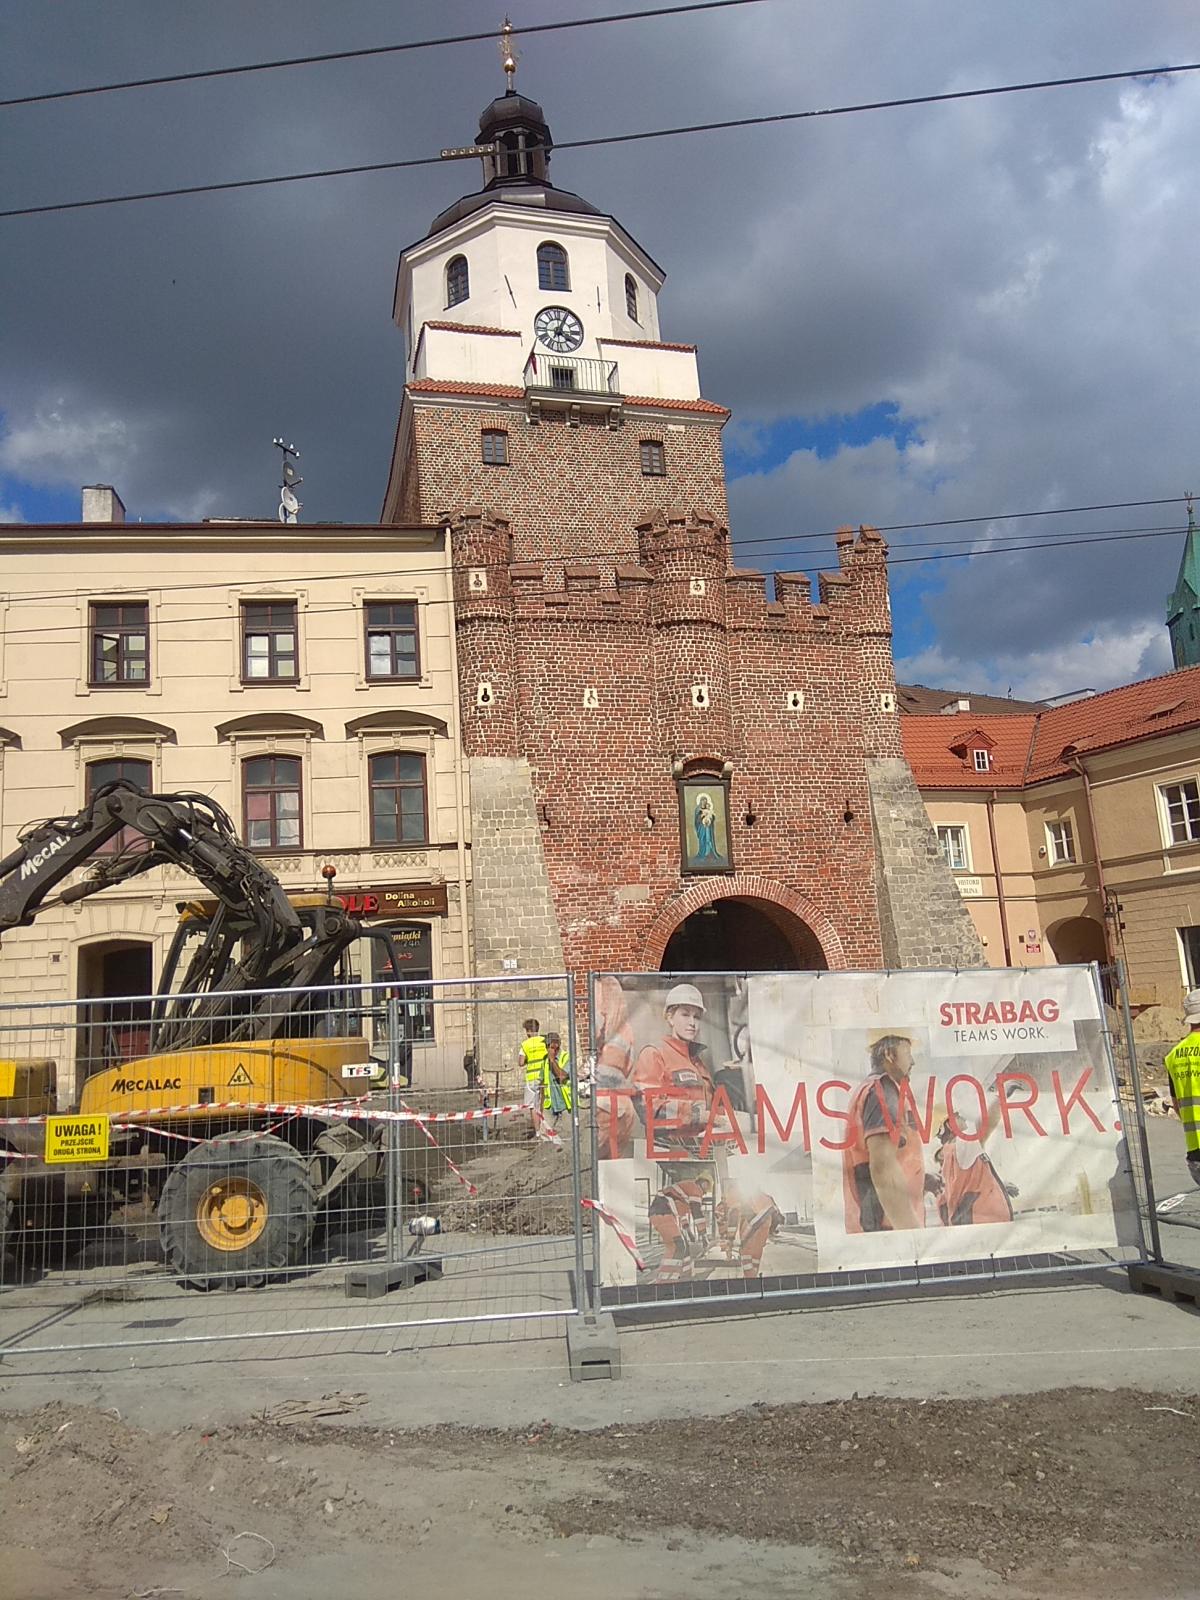 Краковские ворота были построены после татарского нашествия / фото Варвара Вайс